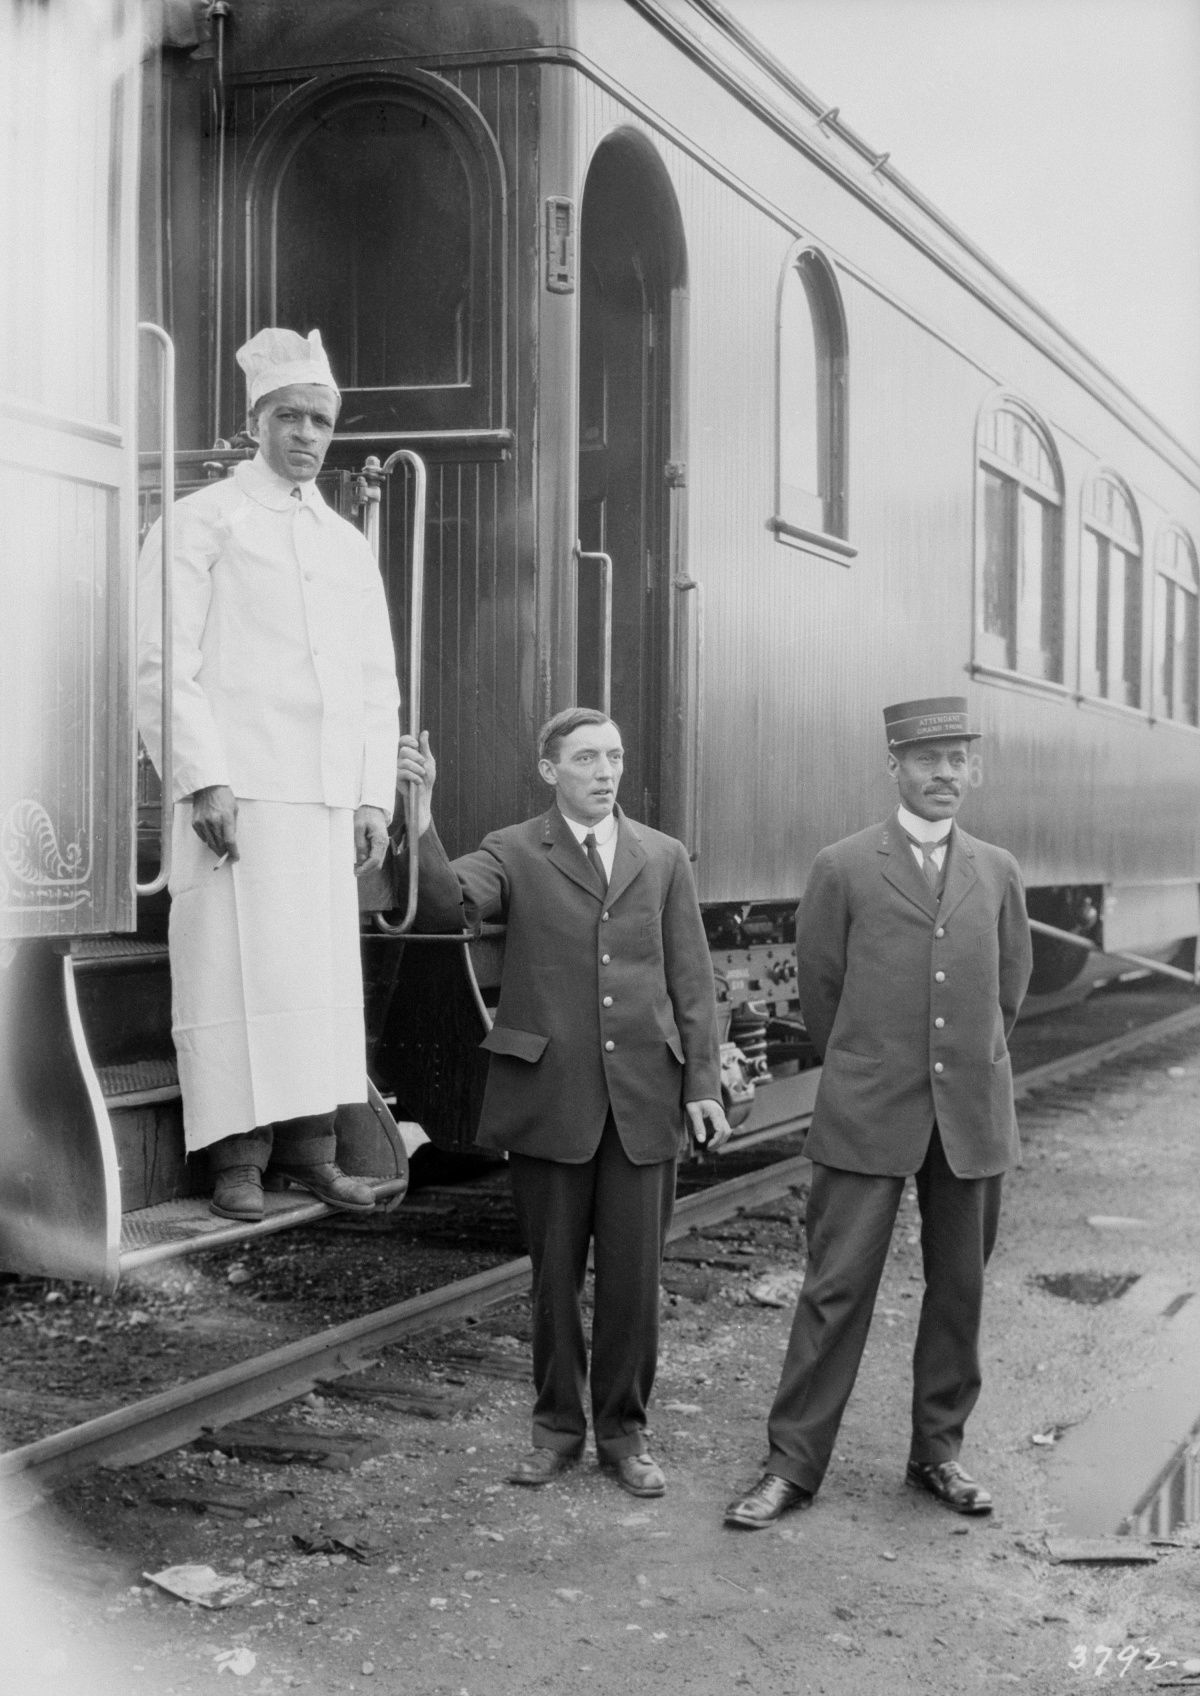 Trois hommes travaillant pour la Compagnie de chemin de fer du Grand Tronc posent devant un wagon